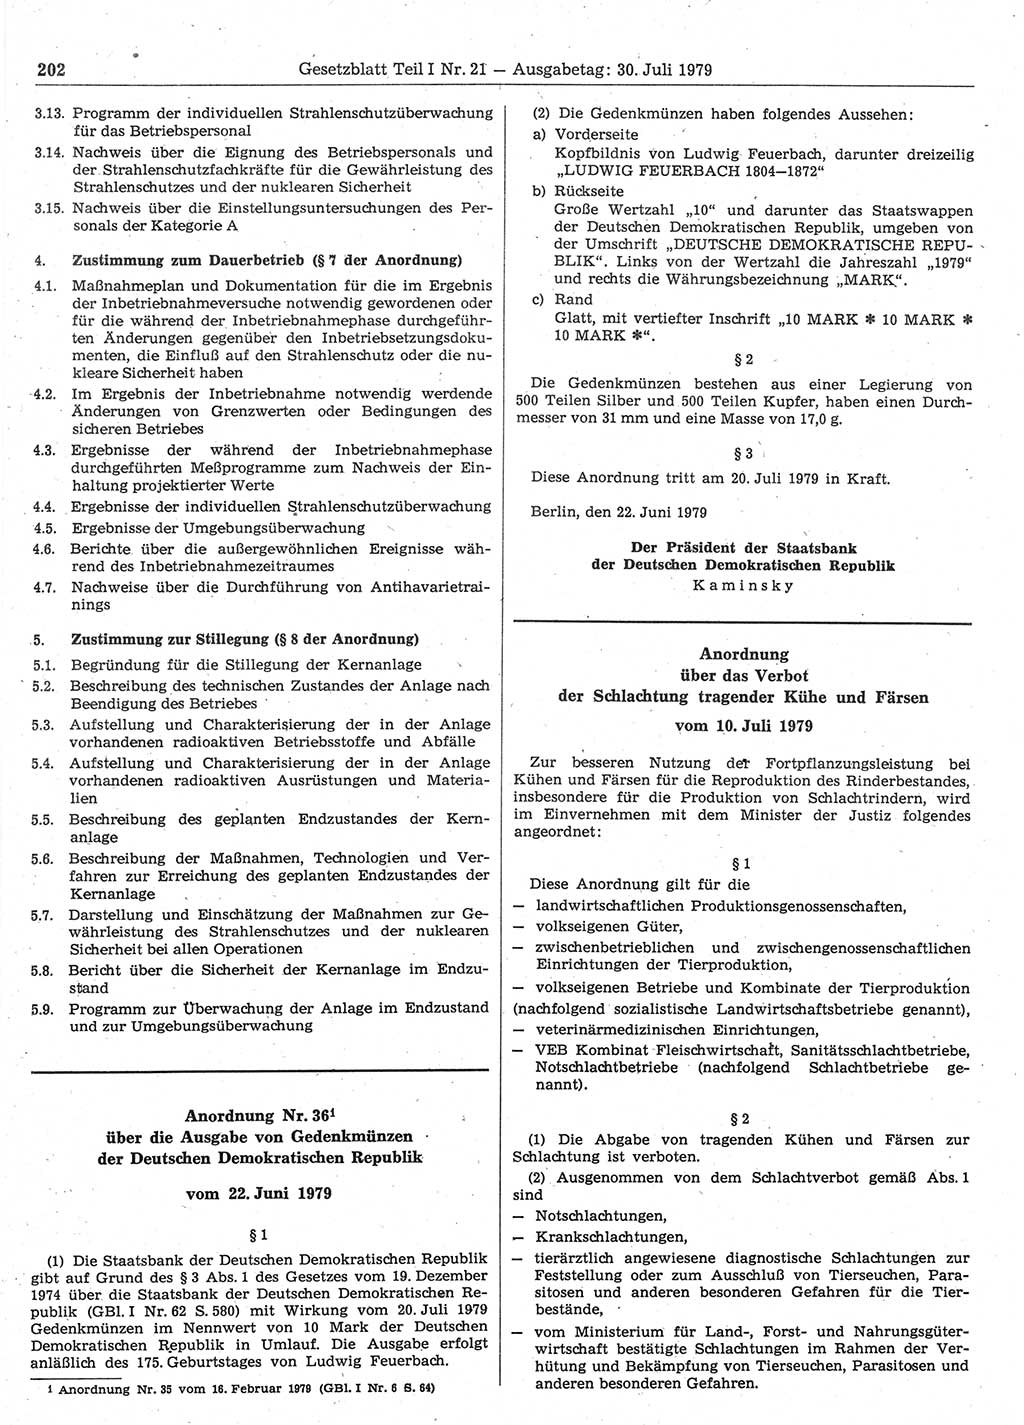 Gesetzblatt (GBl.) der Deutschen Demokratischen Republik (DDR) Teil Ⅰ 1979, Seite 202 (GBl. DDR Ⅰ 1979, S. 202)